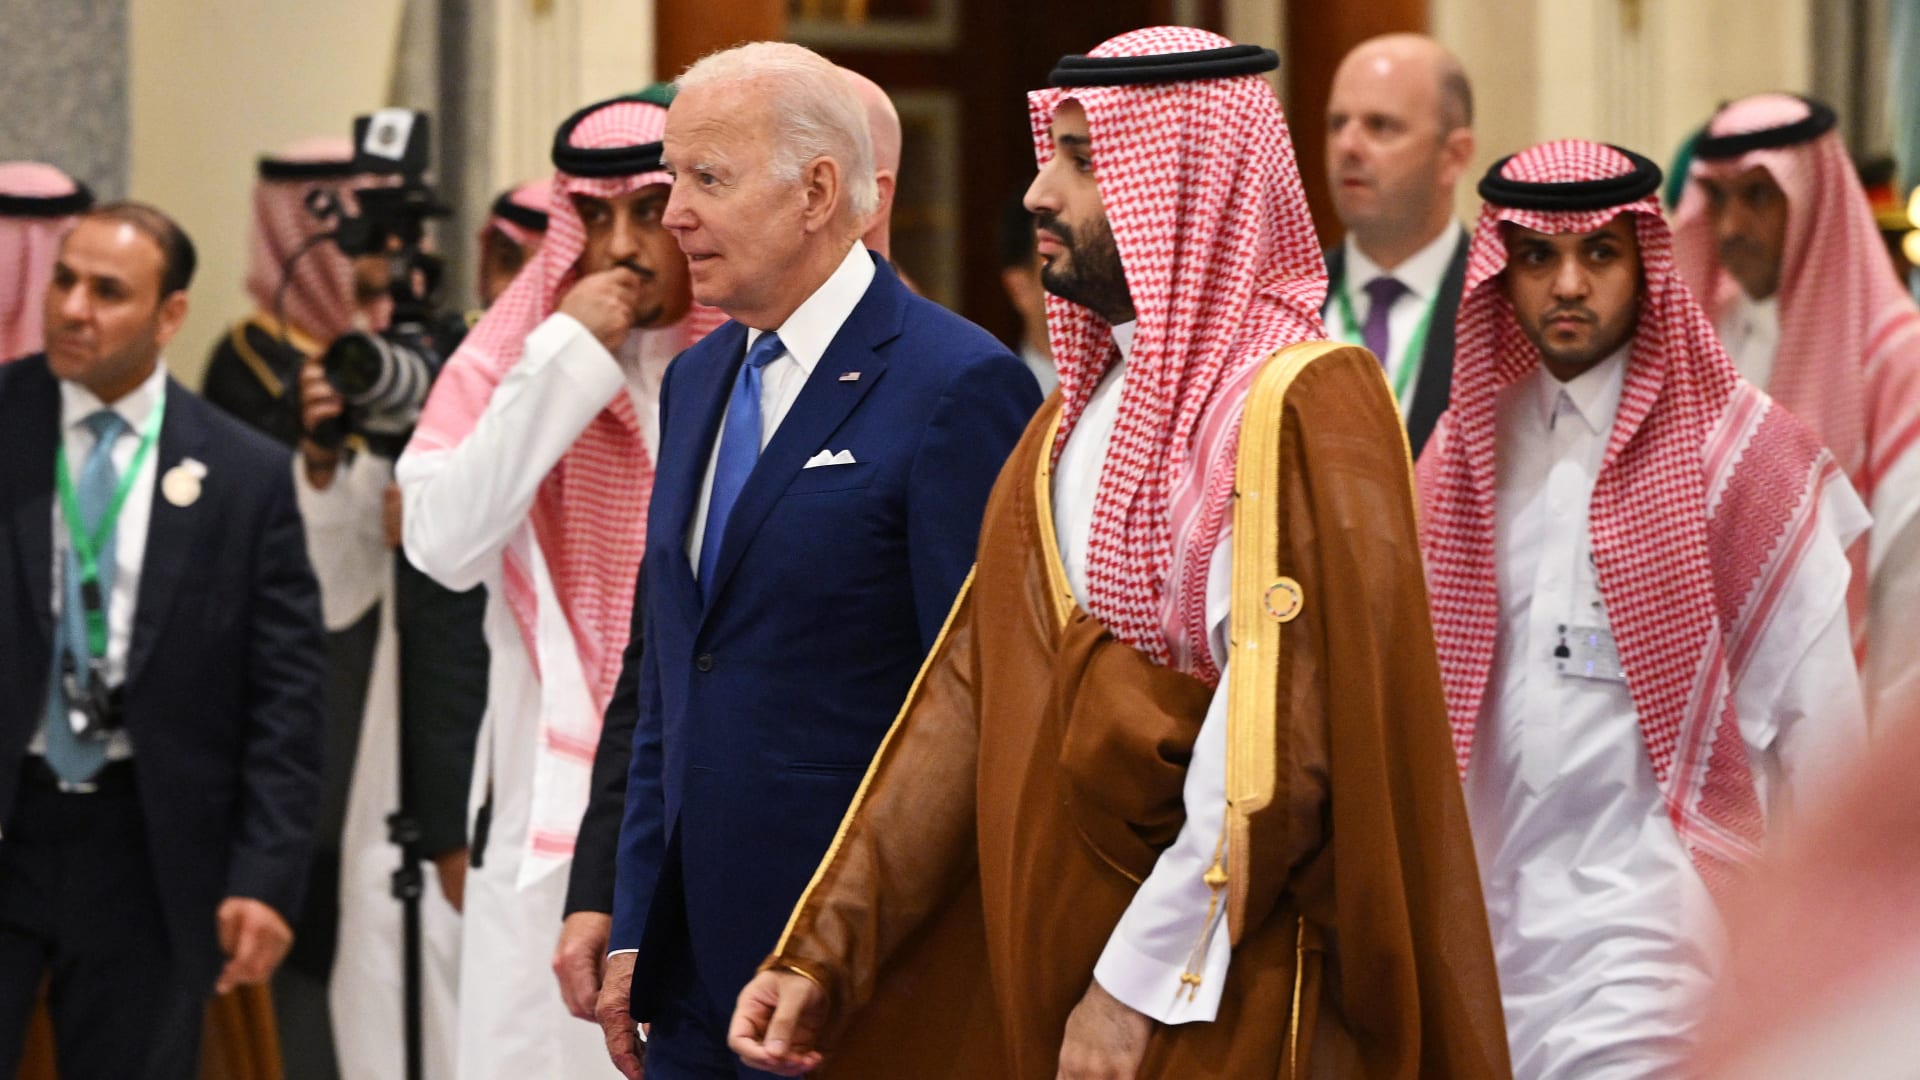 وزير خارجية السعودية عن مقتل خاشقجي: المملكة أخذت الجريمة على محمل الجد وتتحمل مسؤولياتها